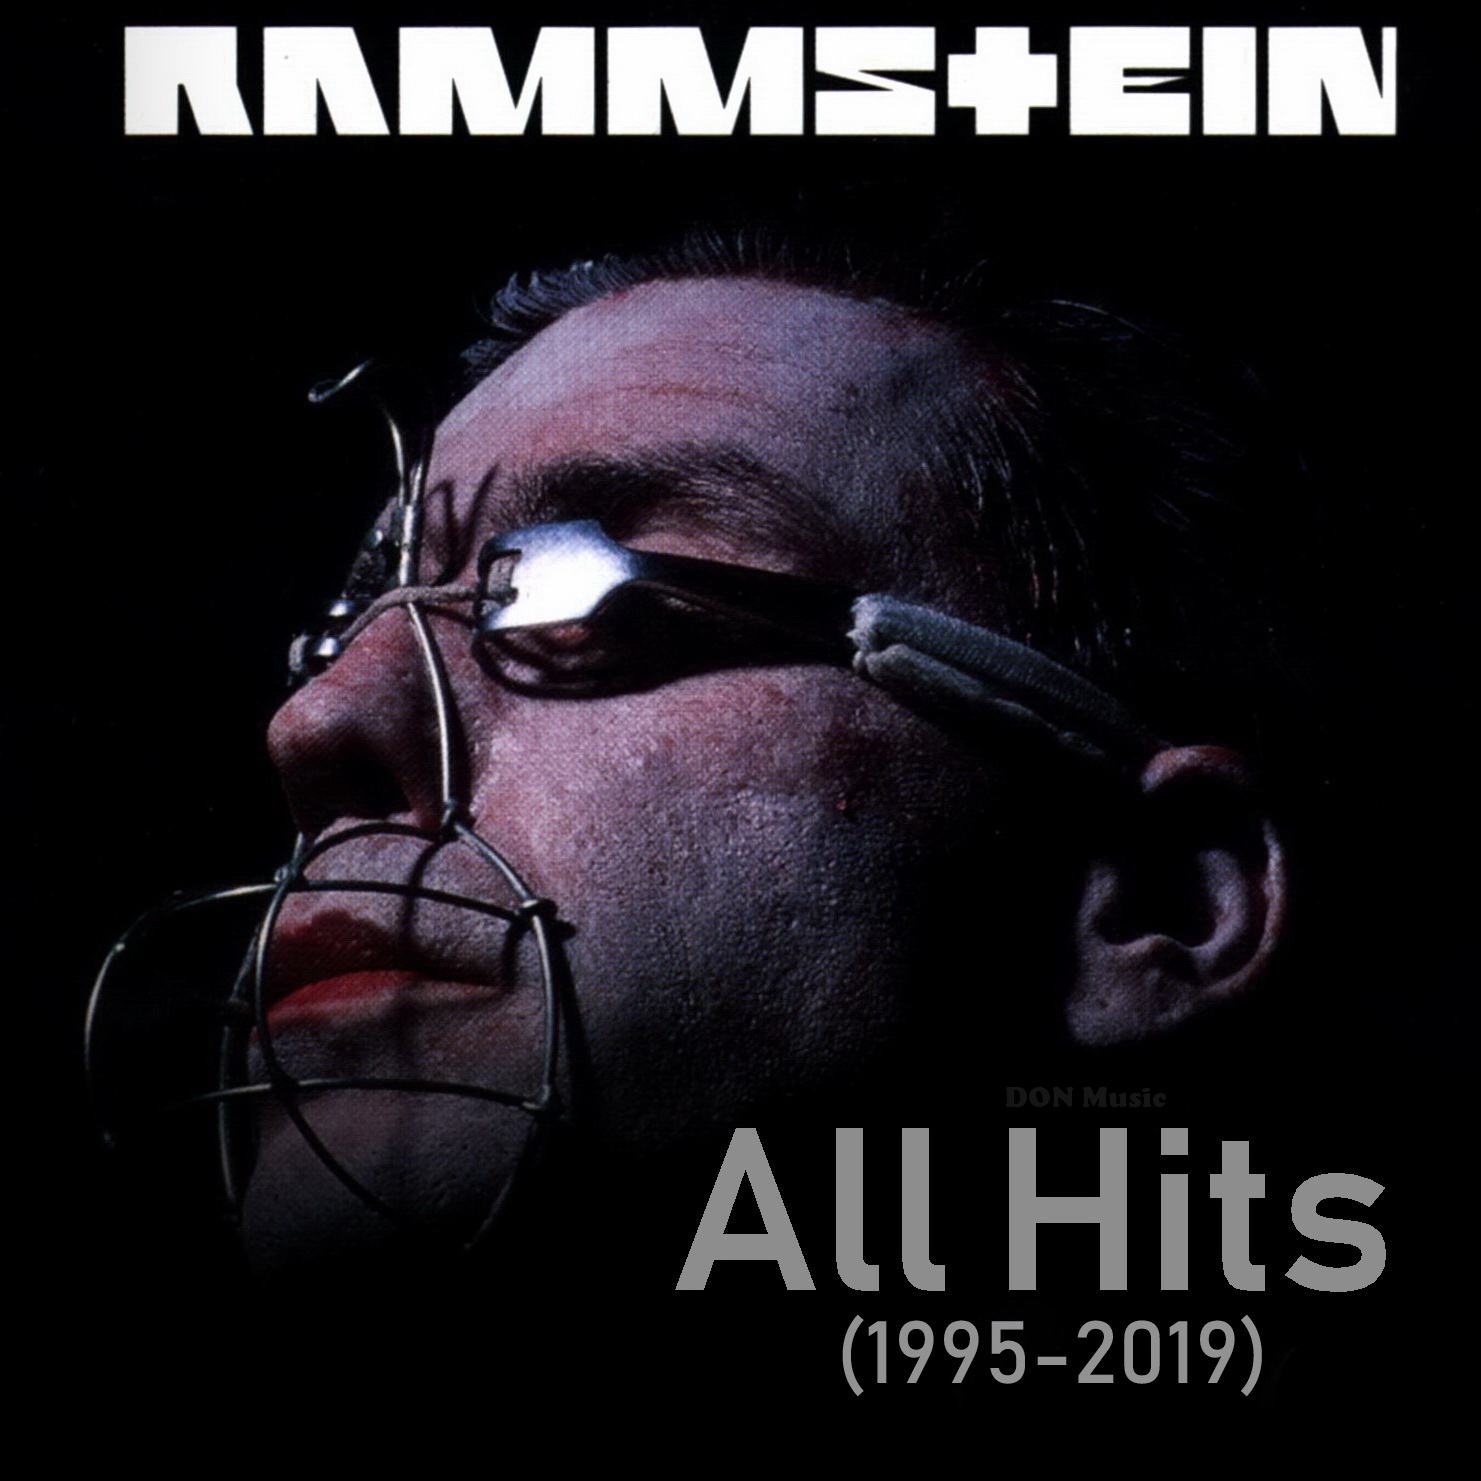 Rammstein - Heirate Mich